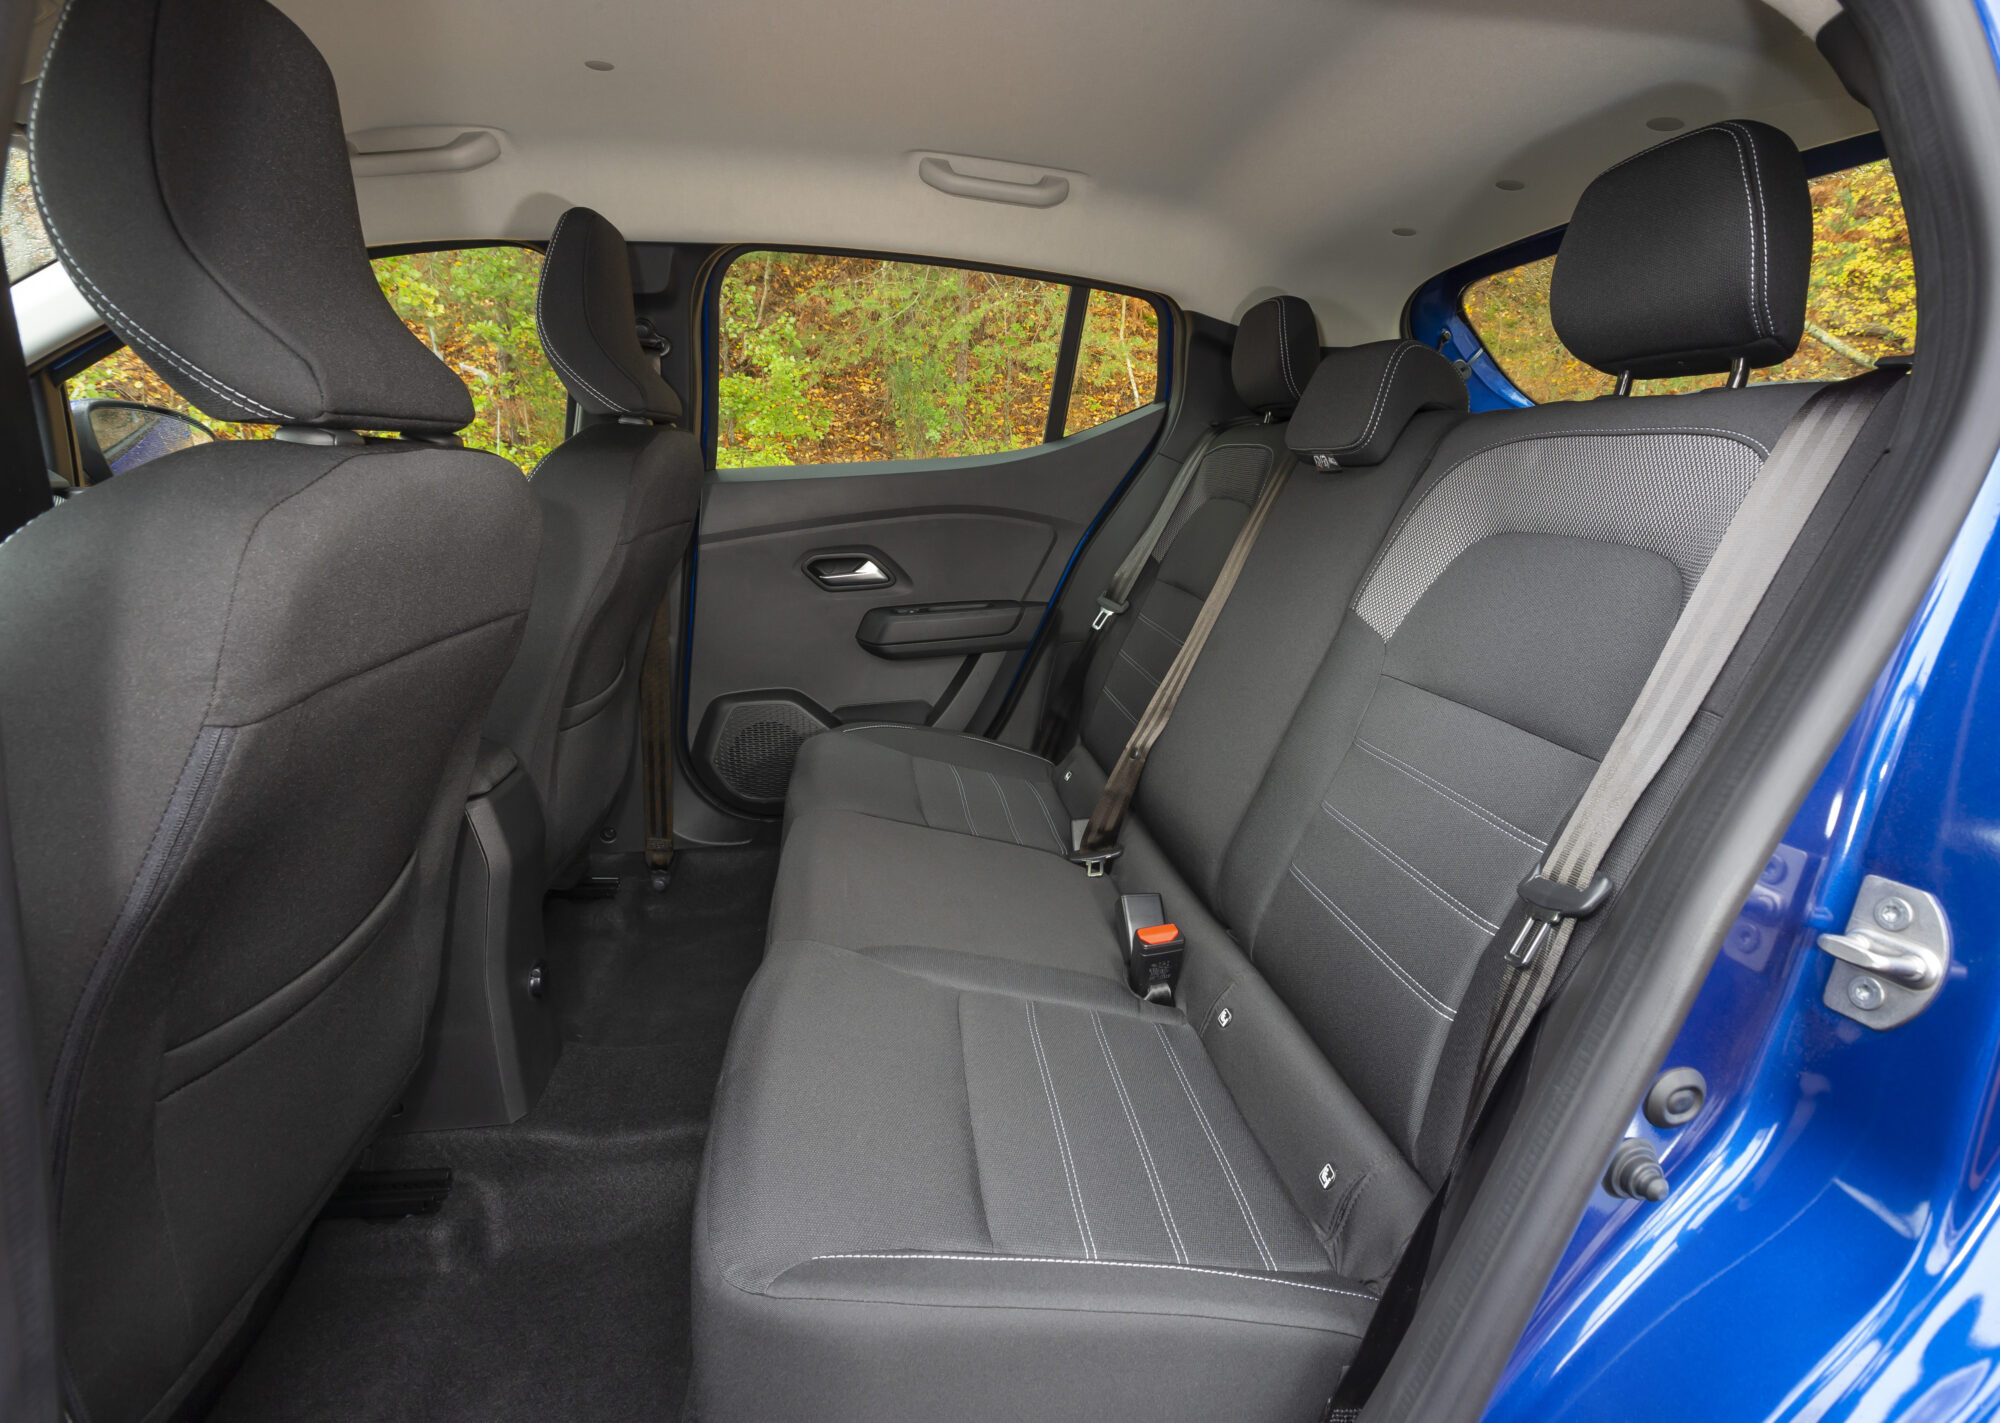 2020 - New Dacia SANDERO tests drive